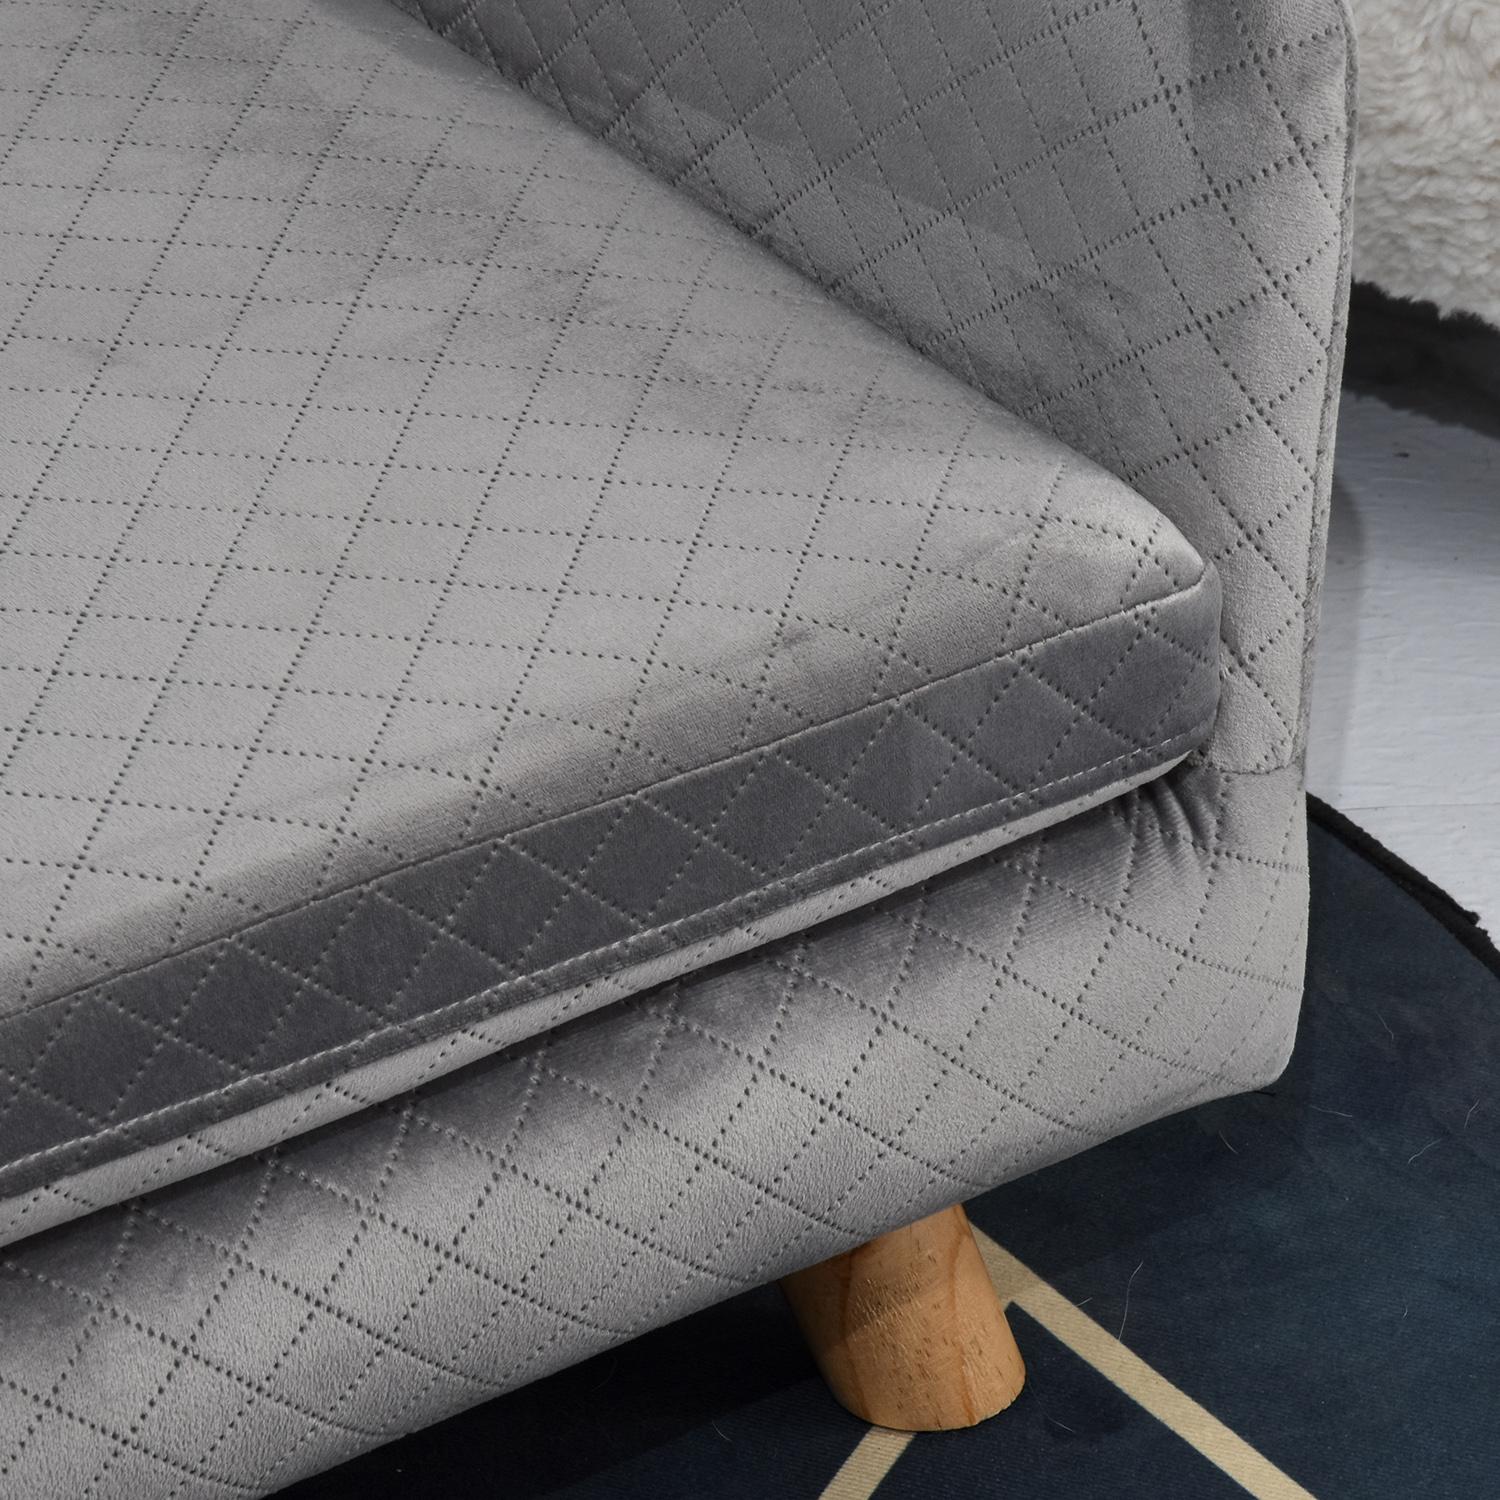 Canapé chien lit pour chien design scandinave coussin moelleux pieds bois massif dim. 64 x 45 x 36 cm velours gris